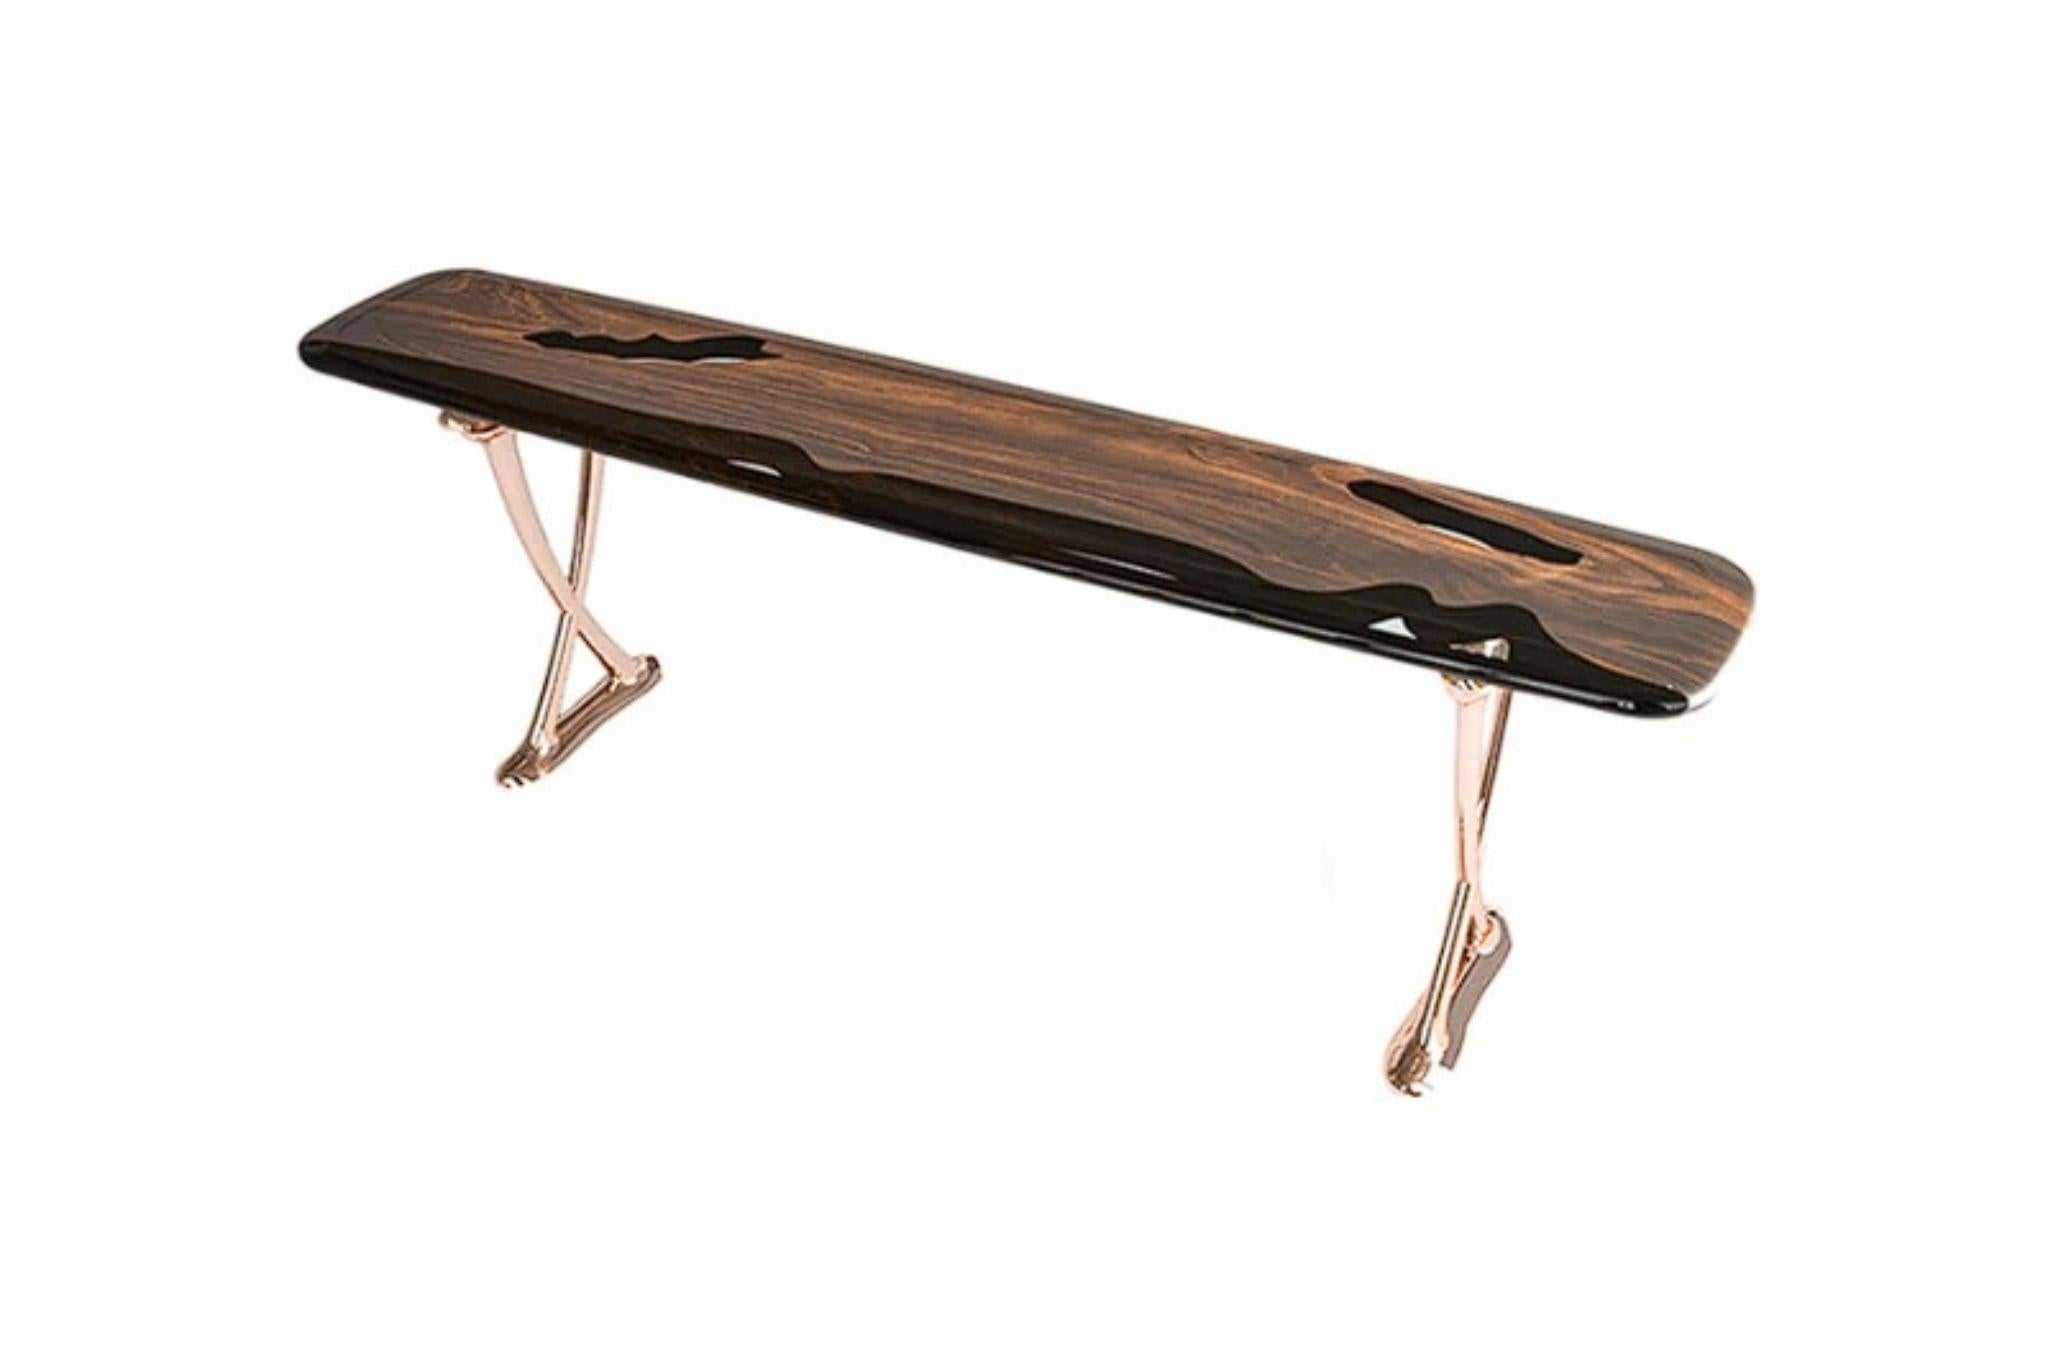 Nous sommes fiers de présenter la console MEDMA, un meuble étonnant fabriqué en bois de noyer riche et de haute qualité. La console est dotée d'un design unique qui allie avec art la beauté naturelle du bois à la résilience cristalline de la résine